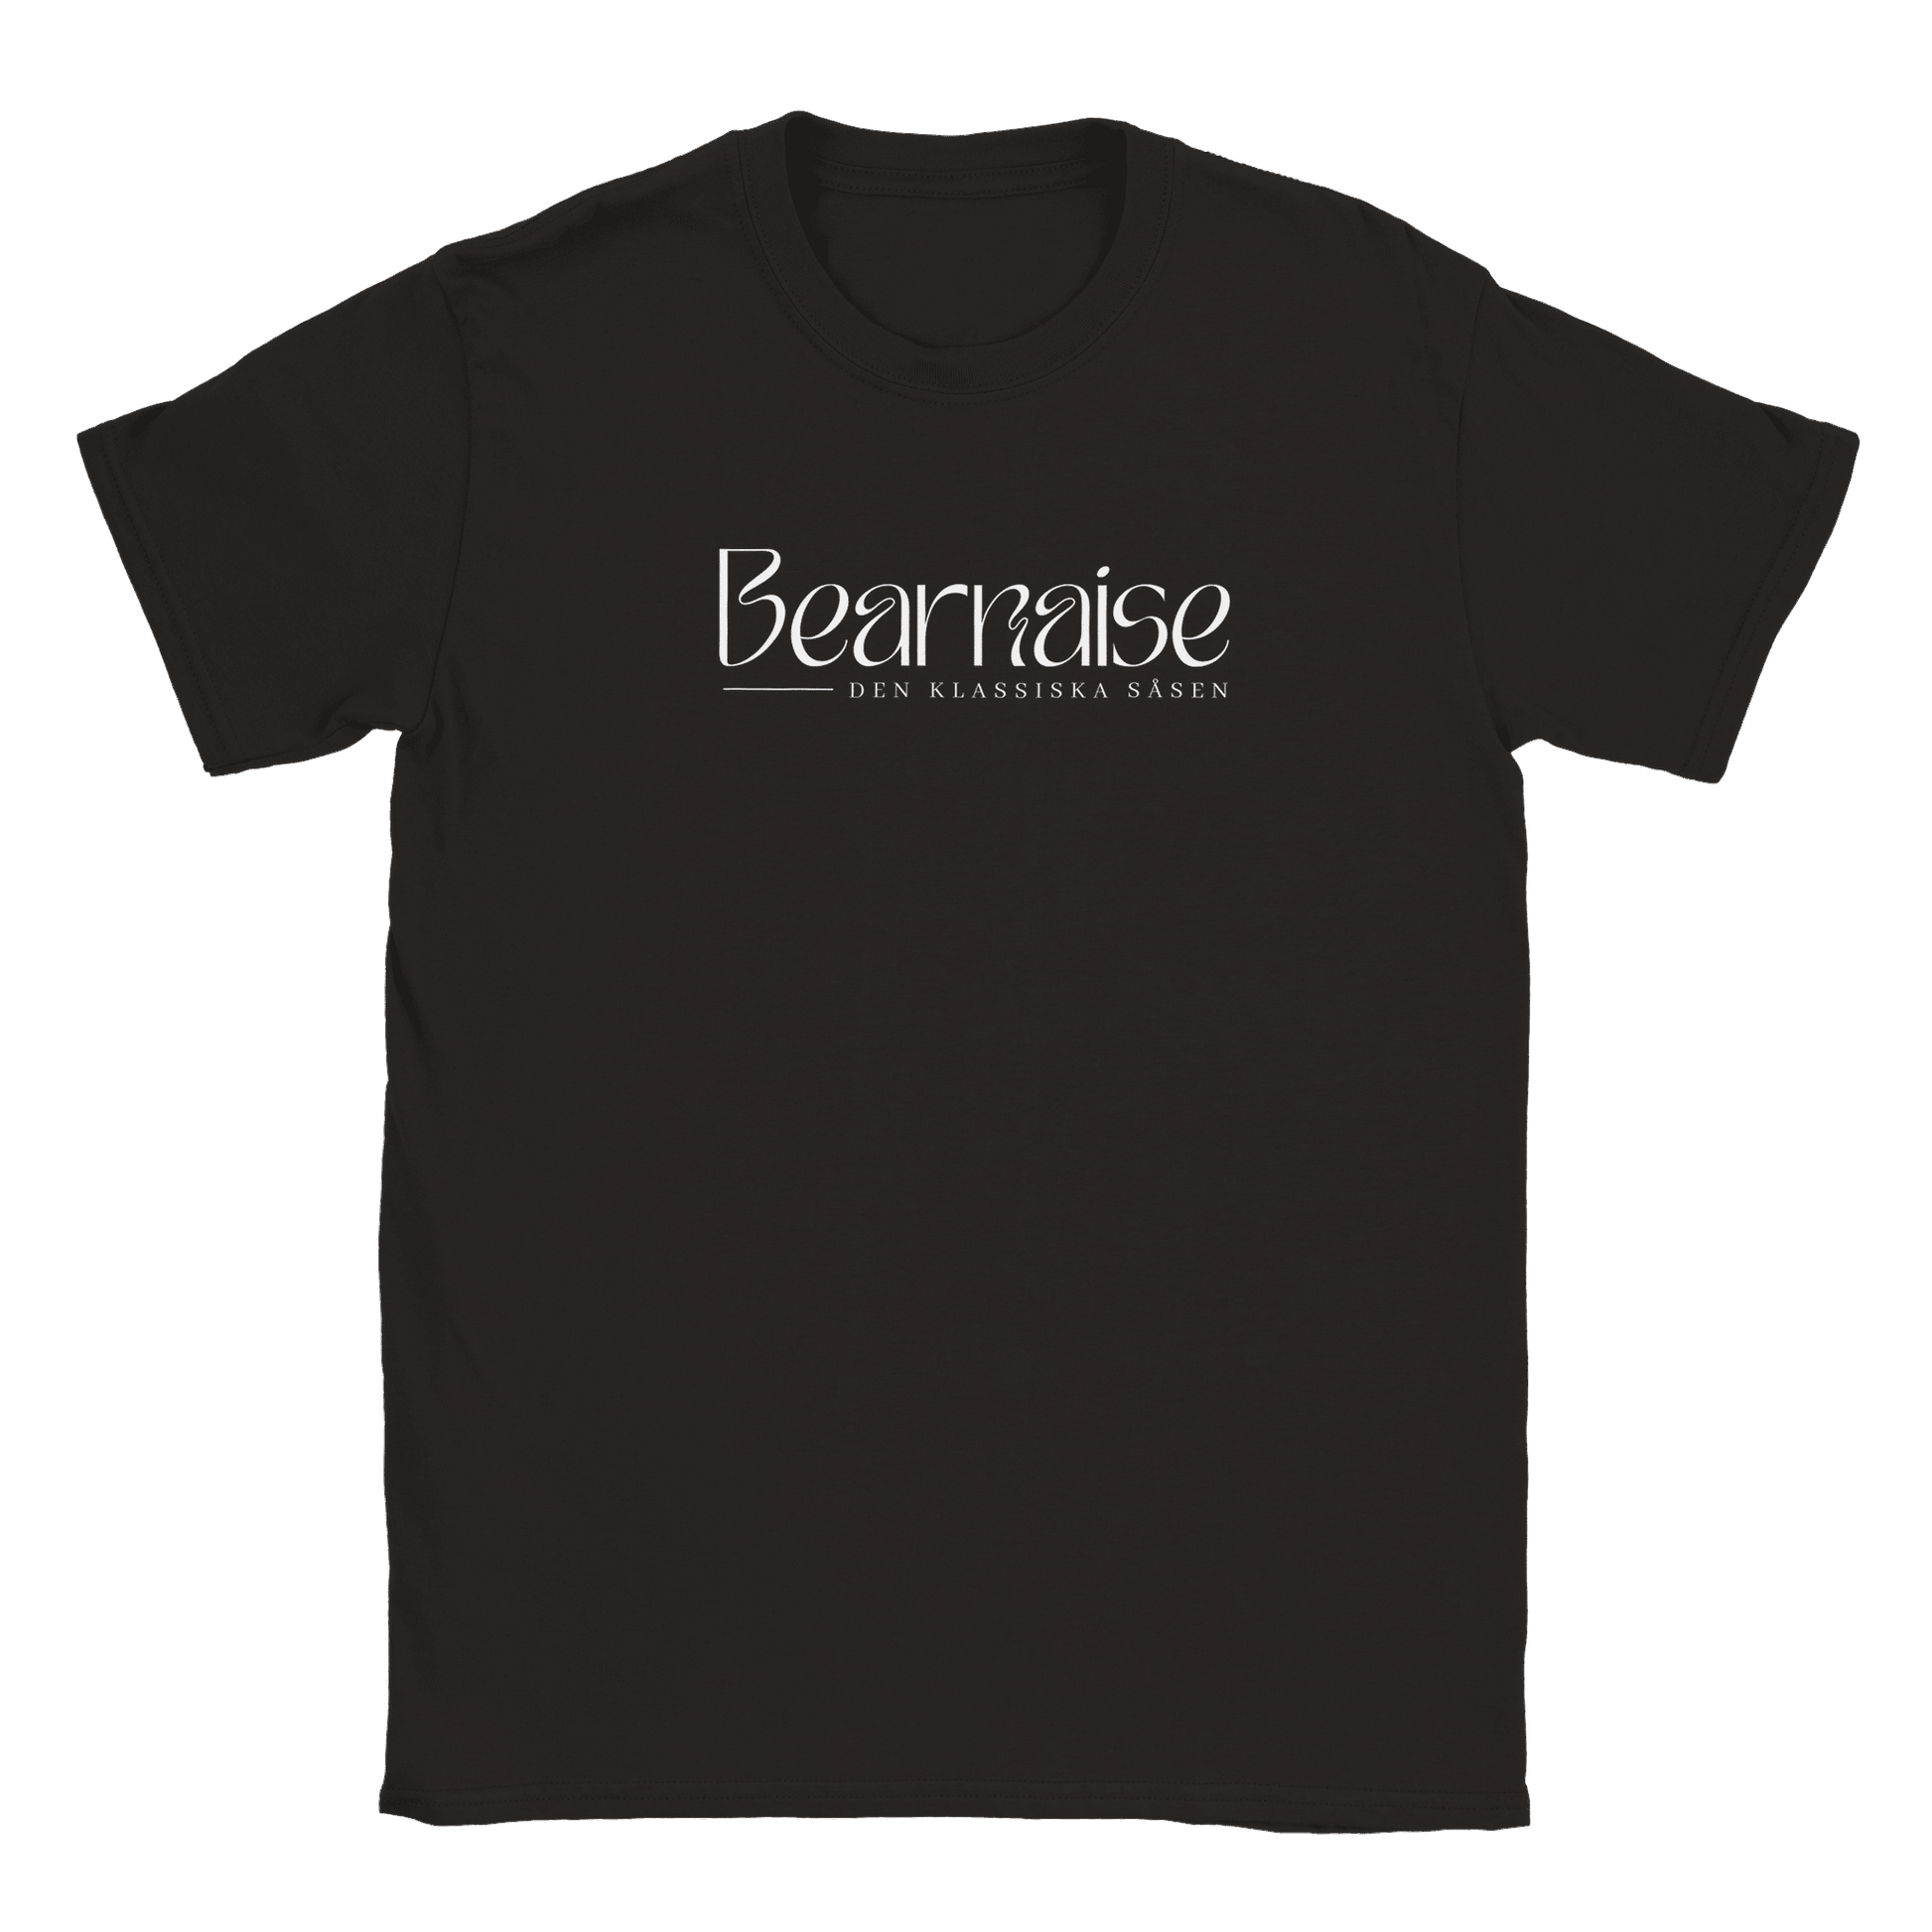 Bearnaisesås - T-shirt Svart